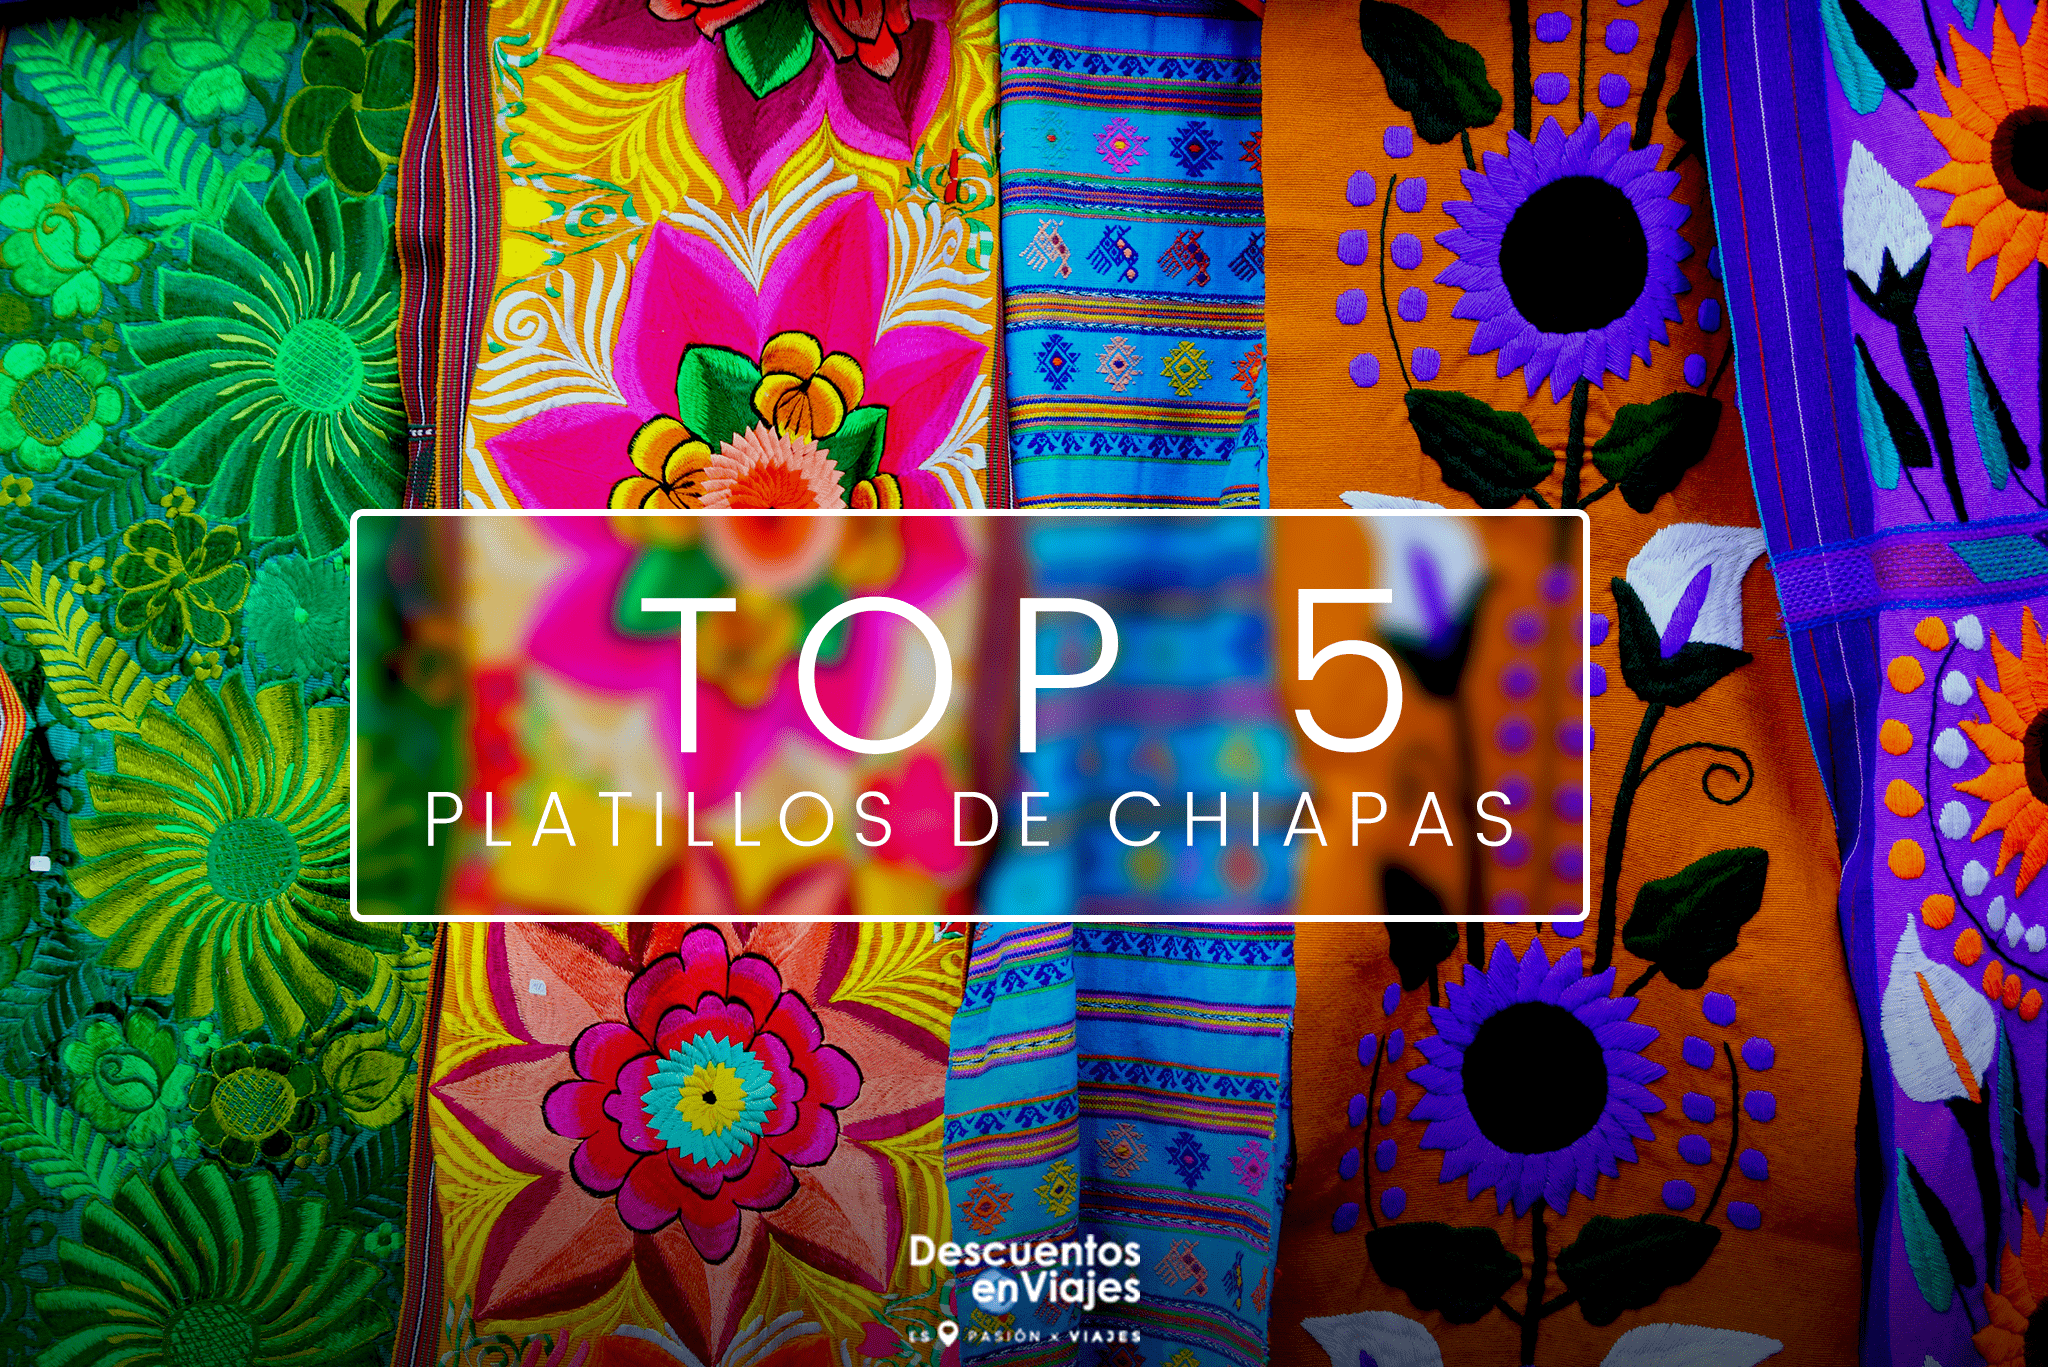 TOP 5 PLATILLOS DE CHIAPAS